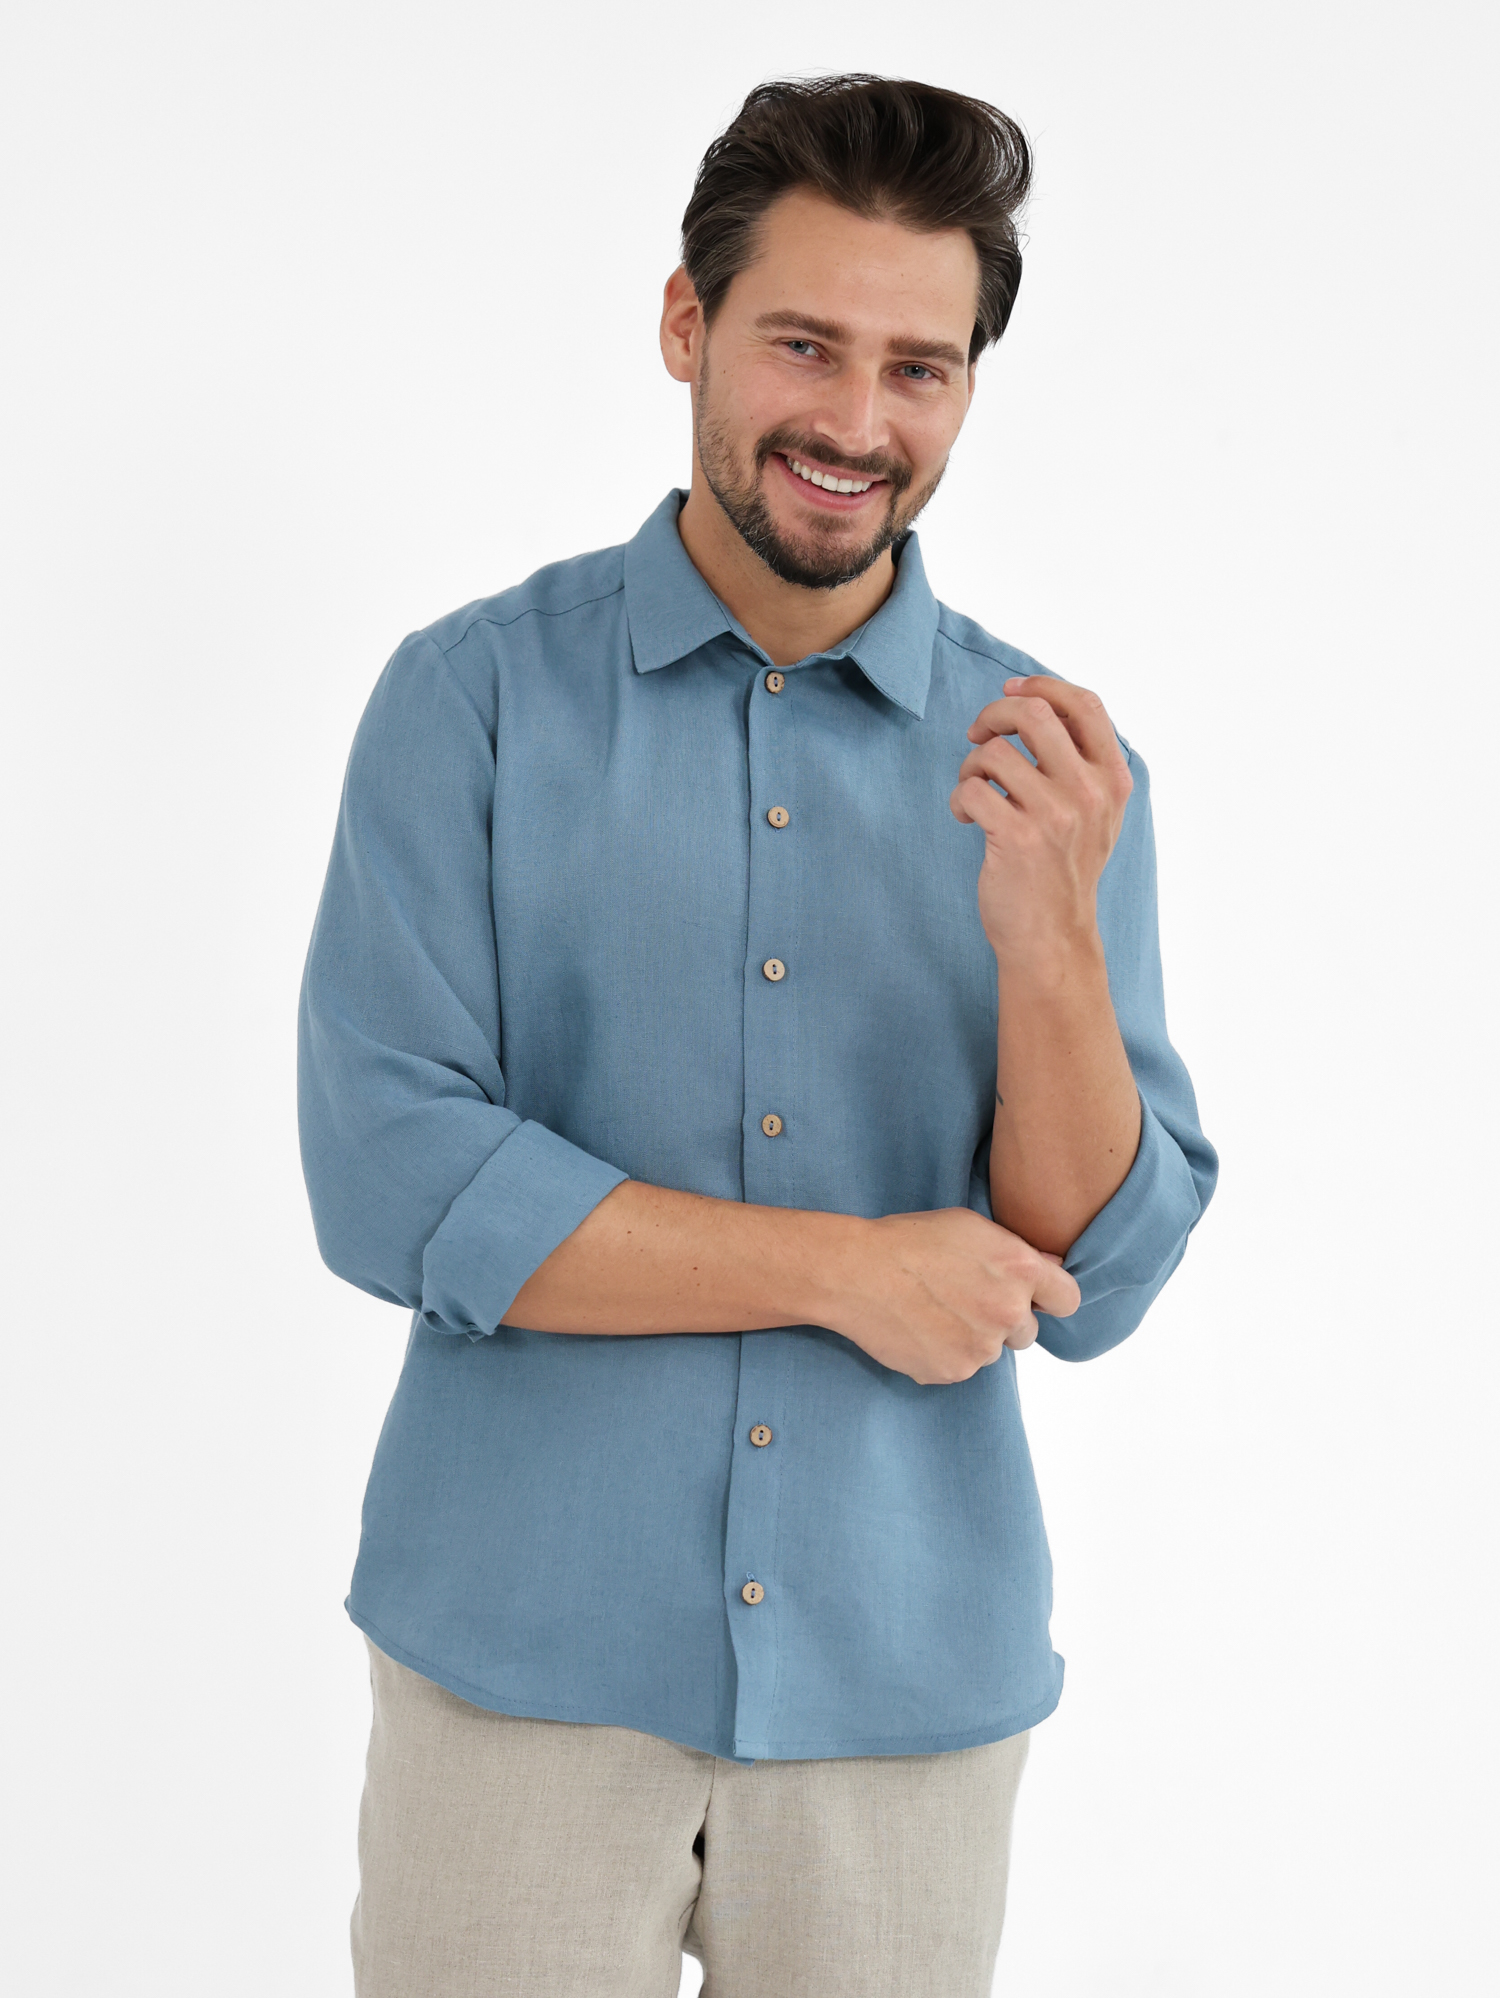 Men's summer linen shirt